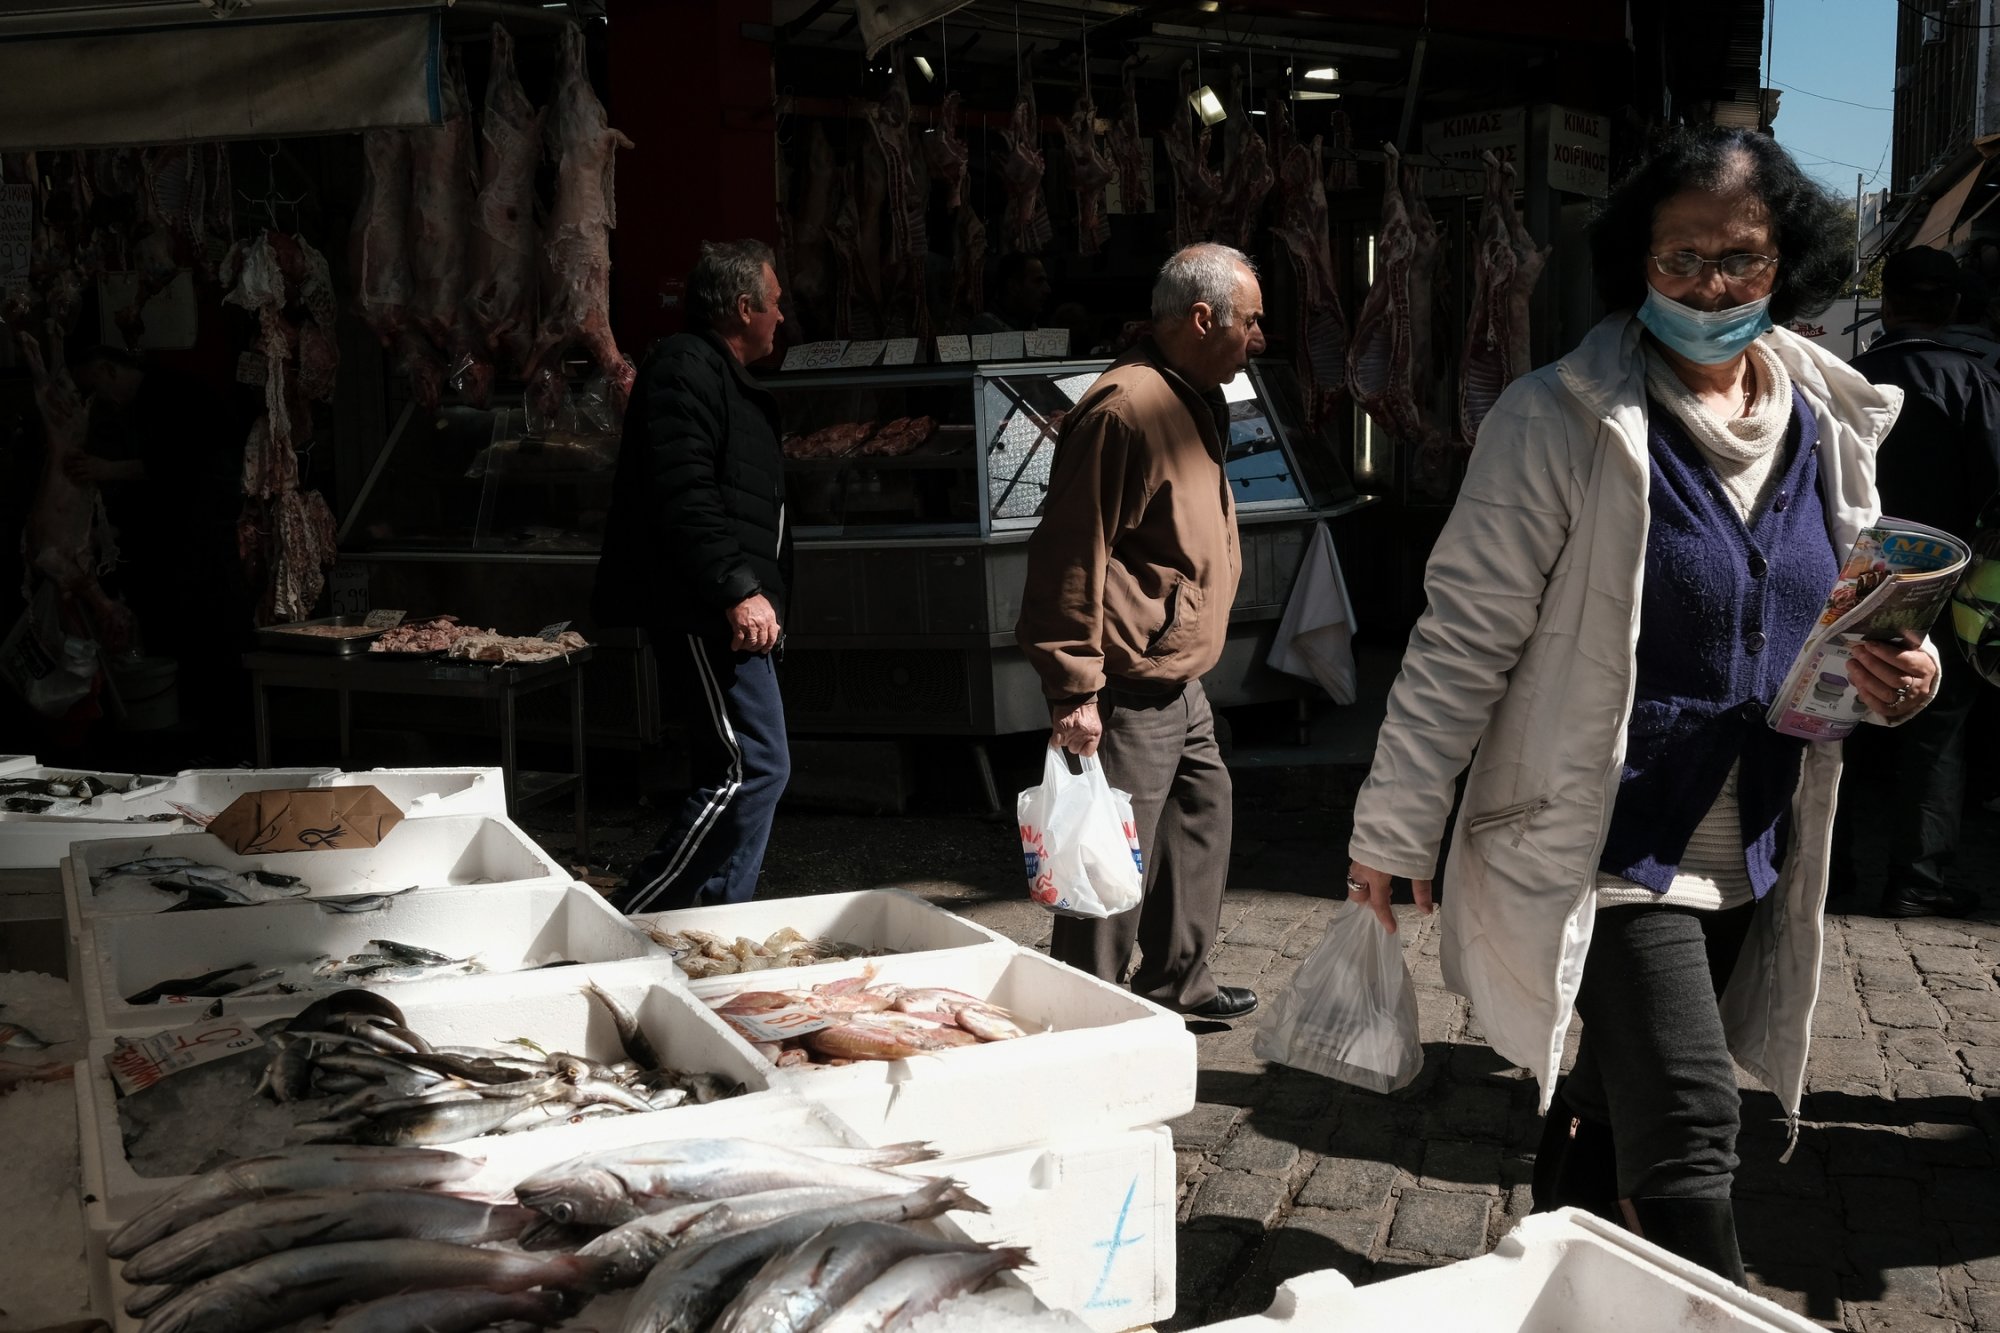 Θεσσαλονίκη: Μειώθηκε η κατανάλωση ψαριών σε ιχθυοπωλεία και ταβέρνες μετά τις πλημμύρες